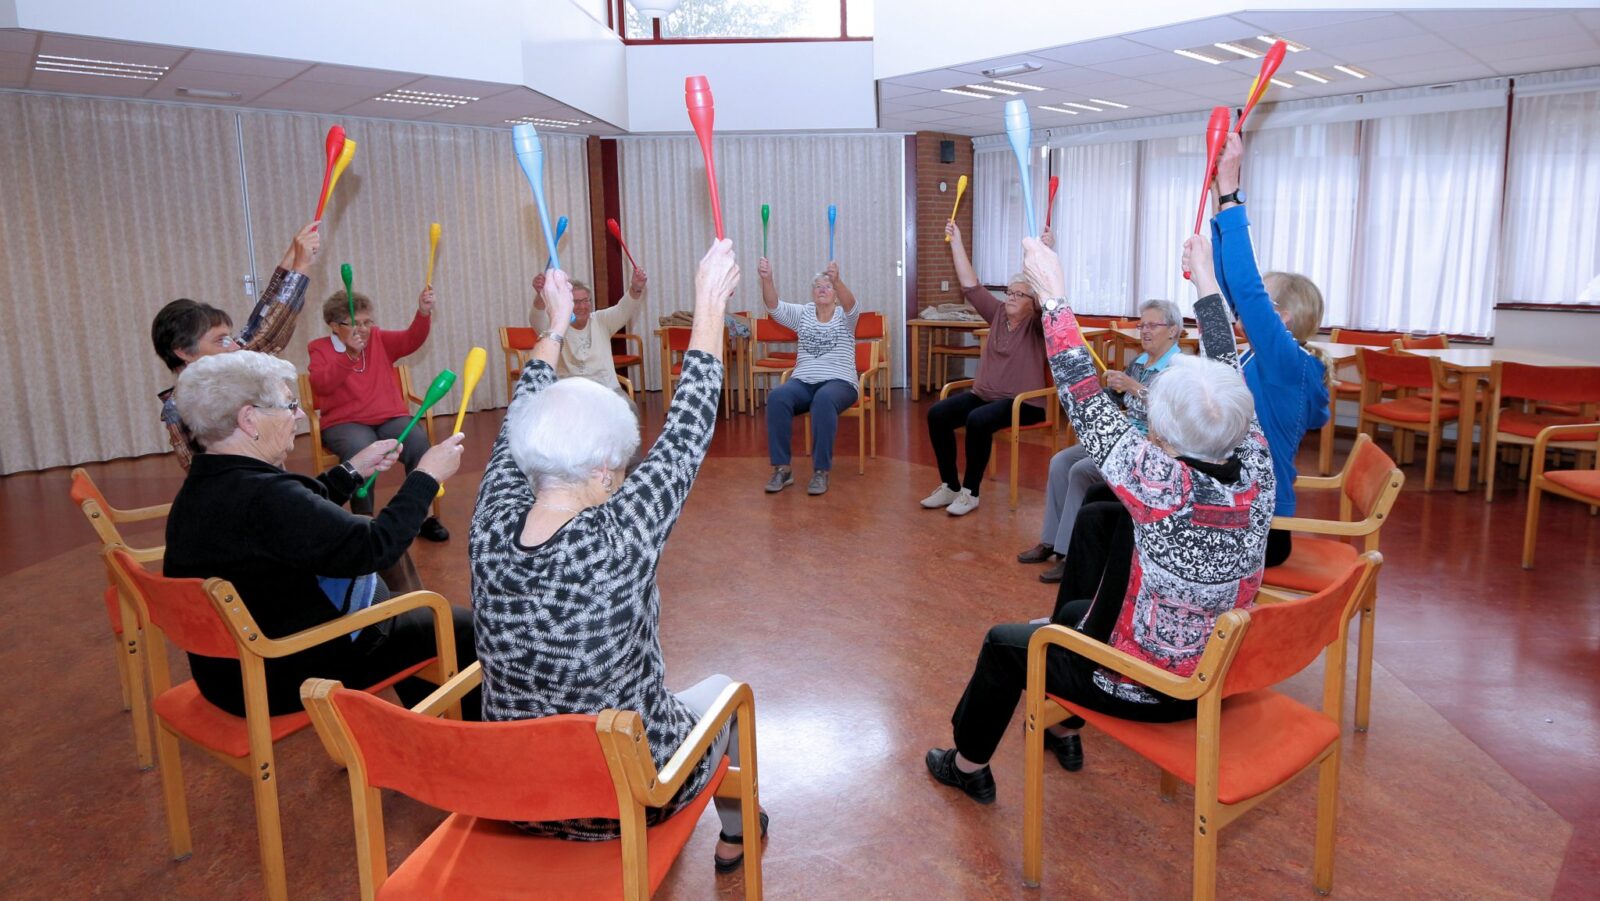 Beste Bewegen voor ouderen, 'blijf fit en kom bewegen' | RTV Katwijk UT-78